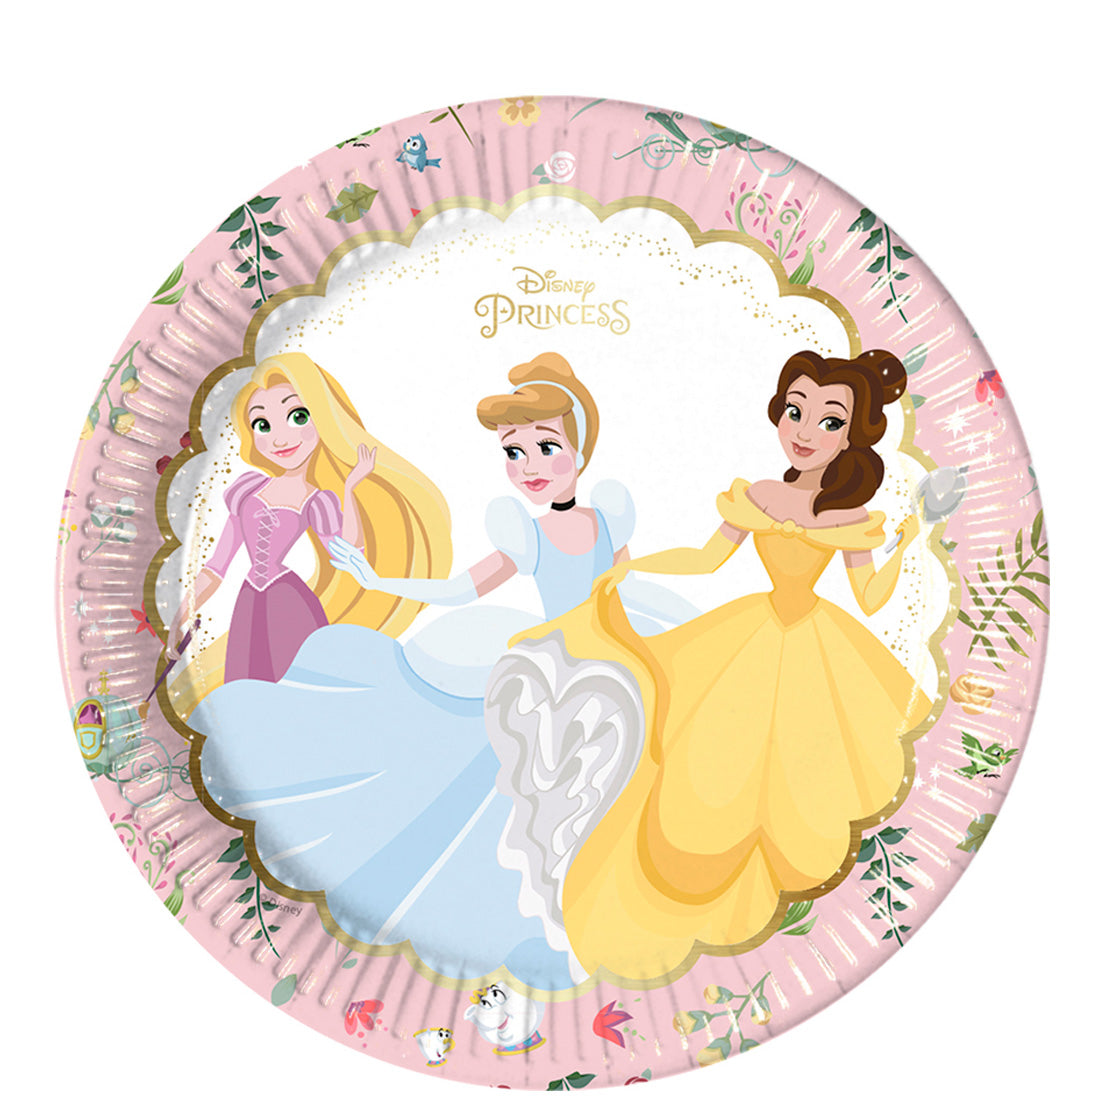 Disney True Princess Paper Plates 23cm, 8pcs - Party Centre